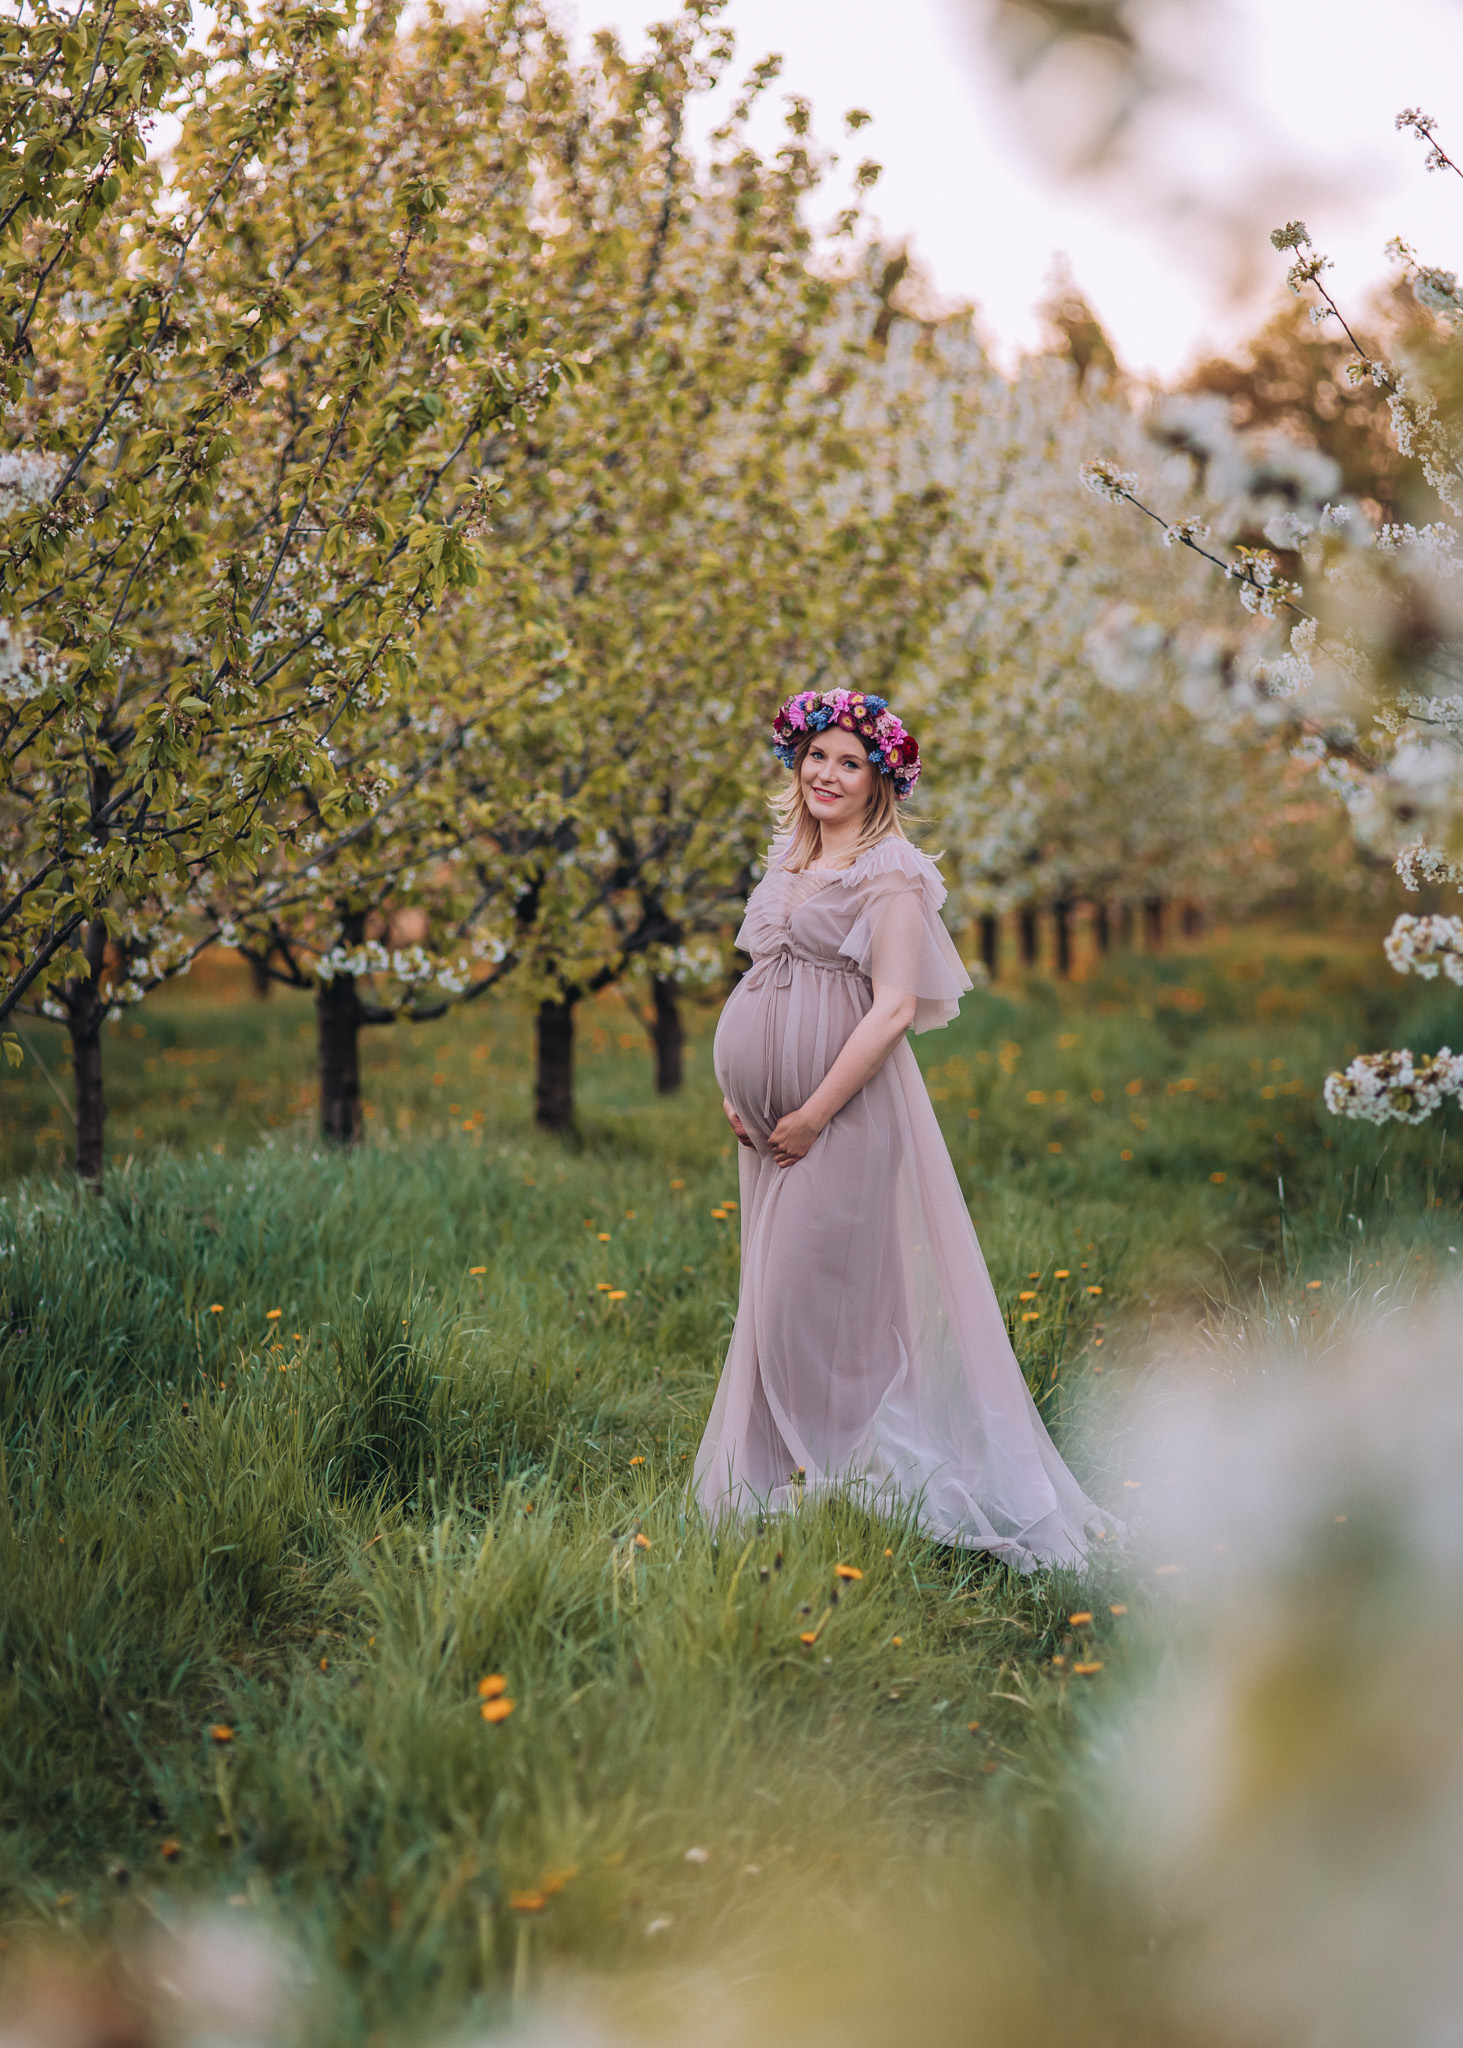 zdjęcia ciążowe w plenerze w kwitnącym sadzie warszawa tarczyn konstancin piaseczno